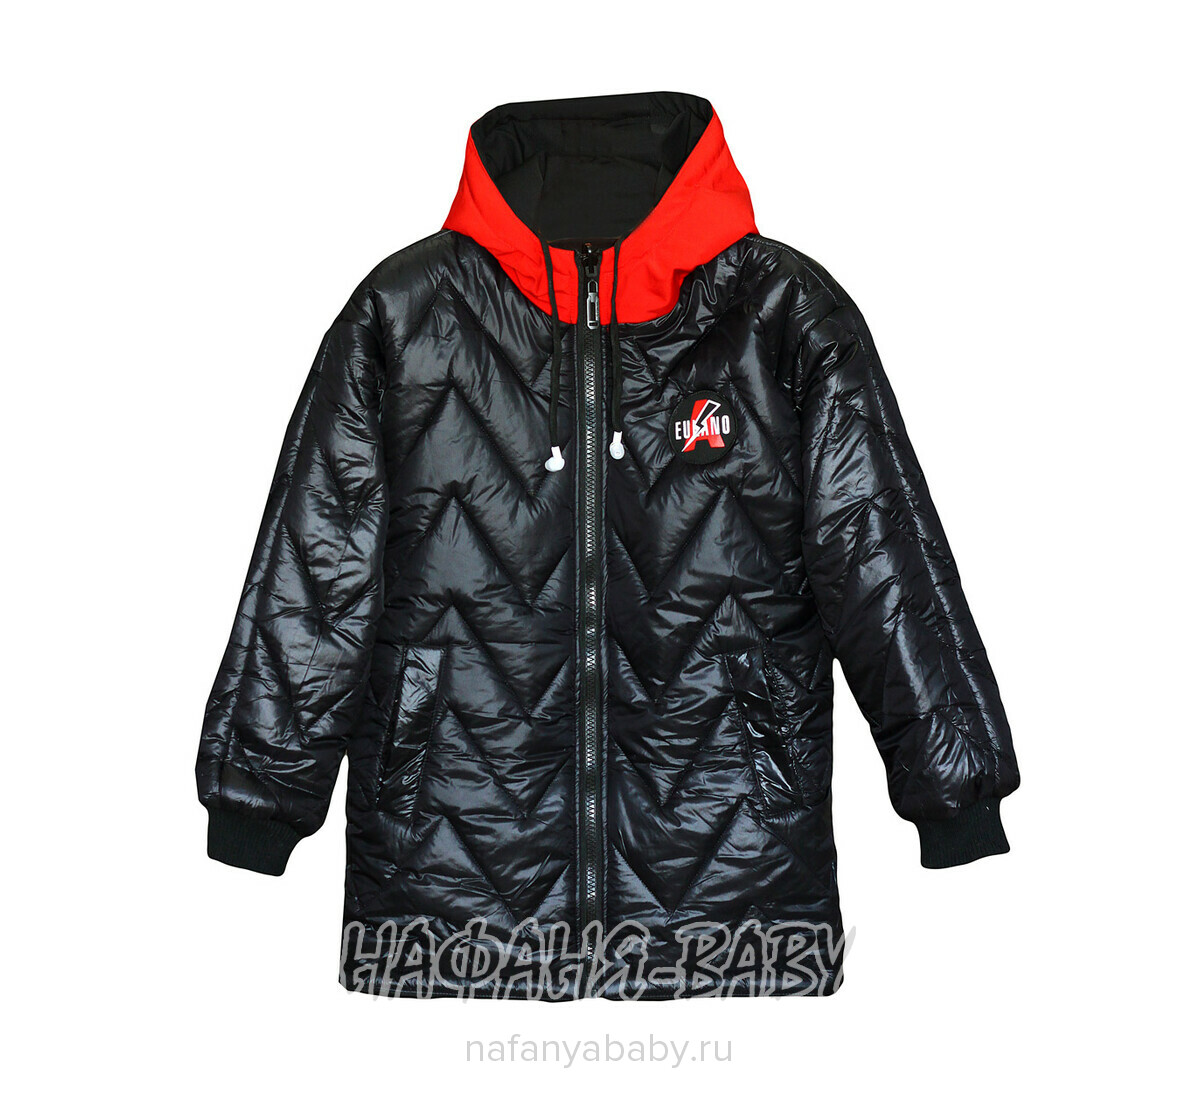 Подростковая демисезонная куртка Z.Y.G.Z. арт: 1072, 10-15 лет, цвет черный с красным, оптом Китай (Пекин)